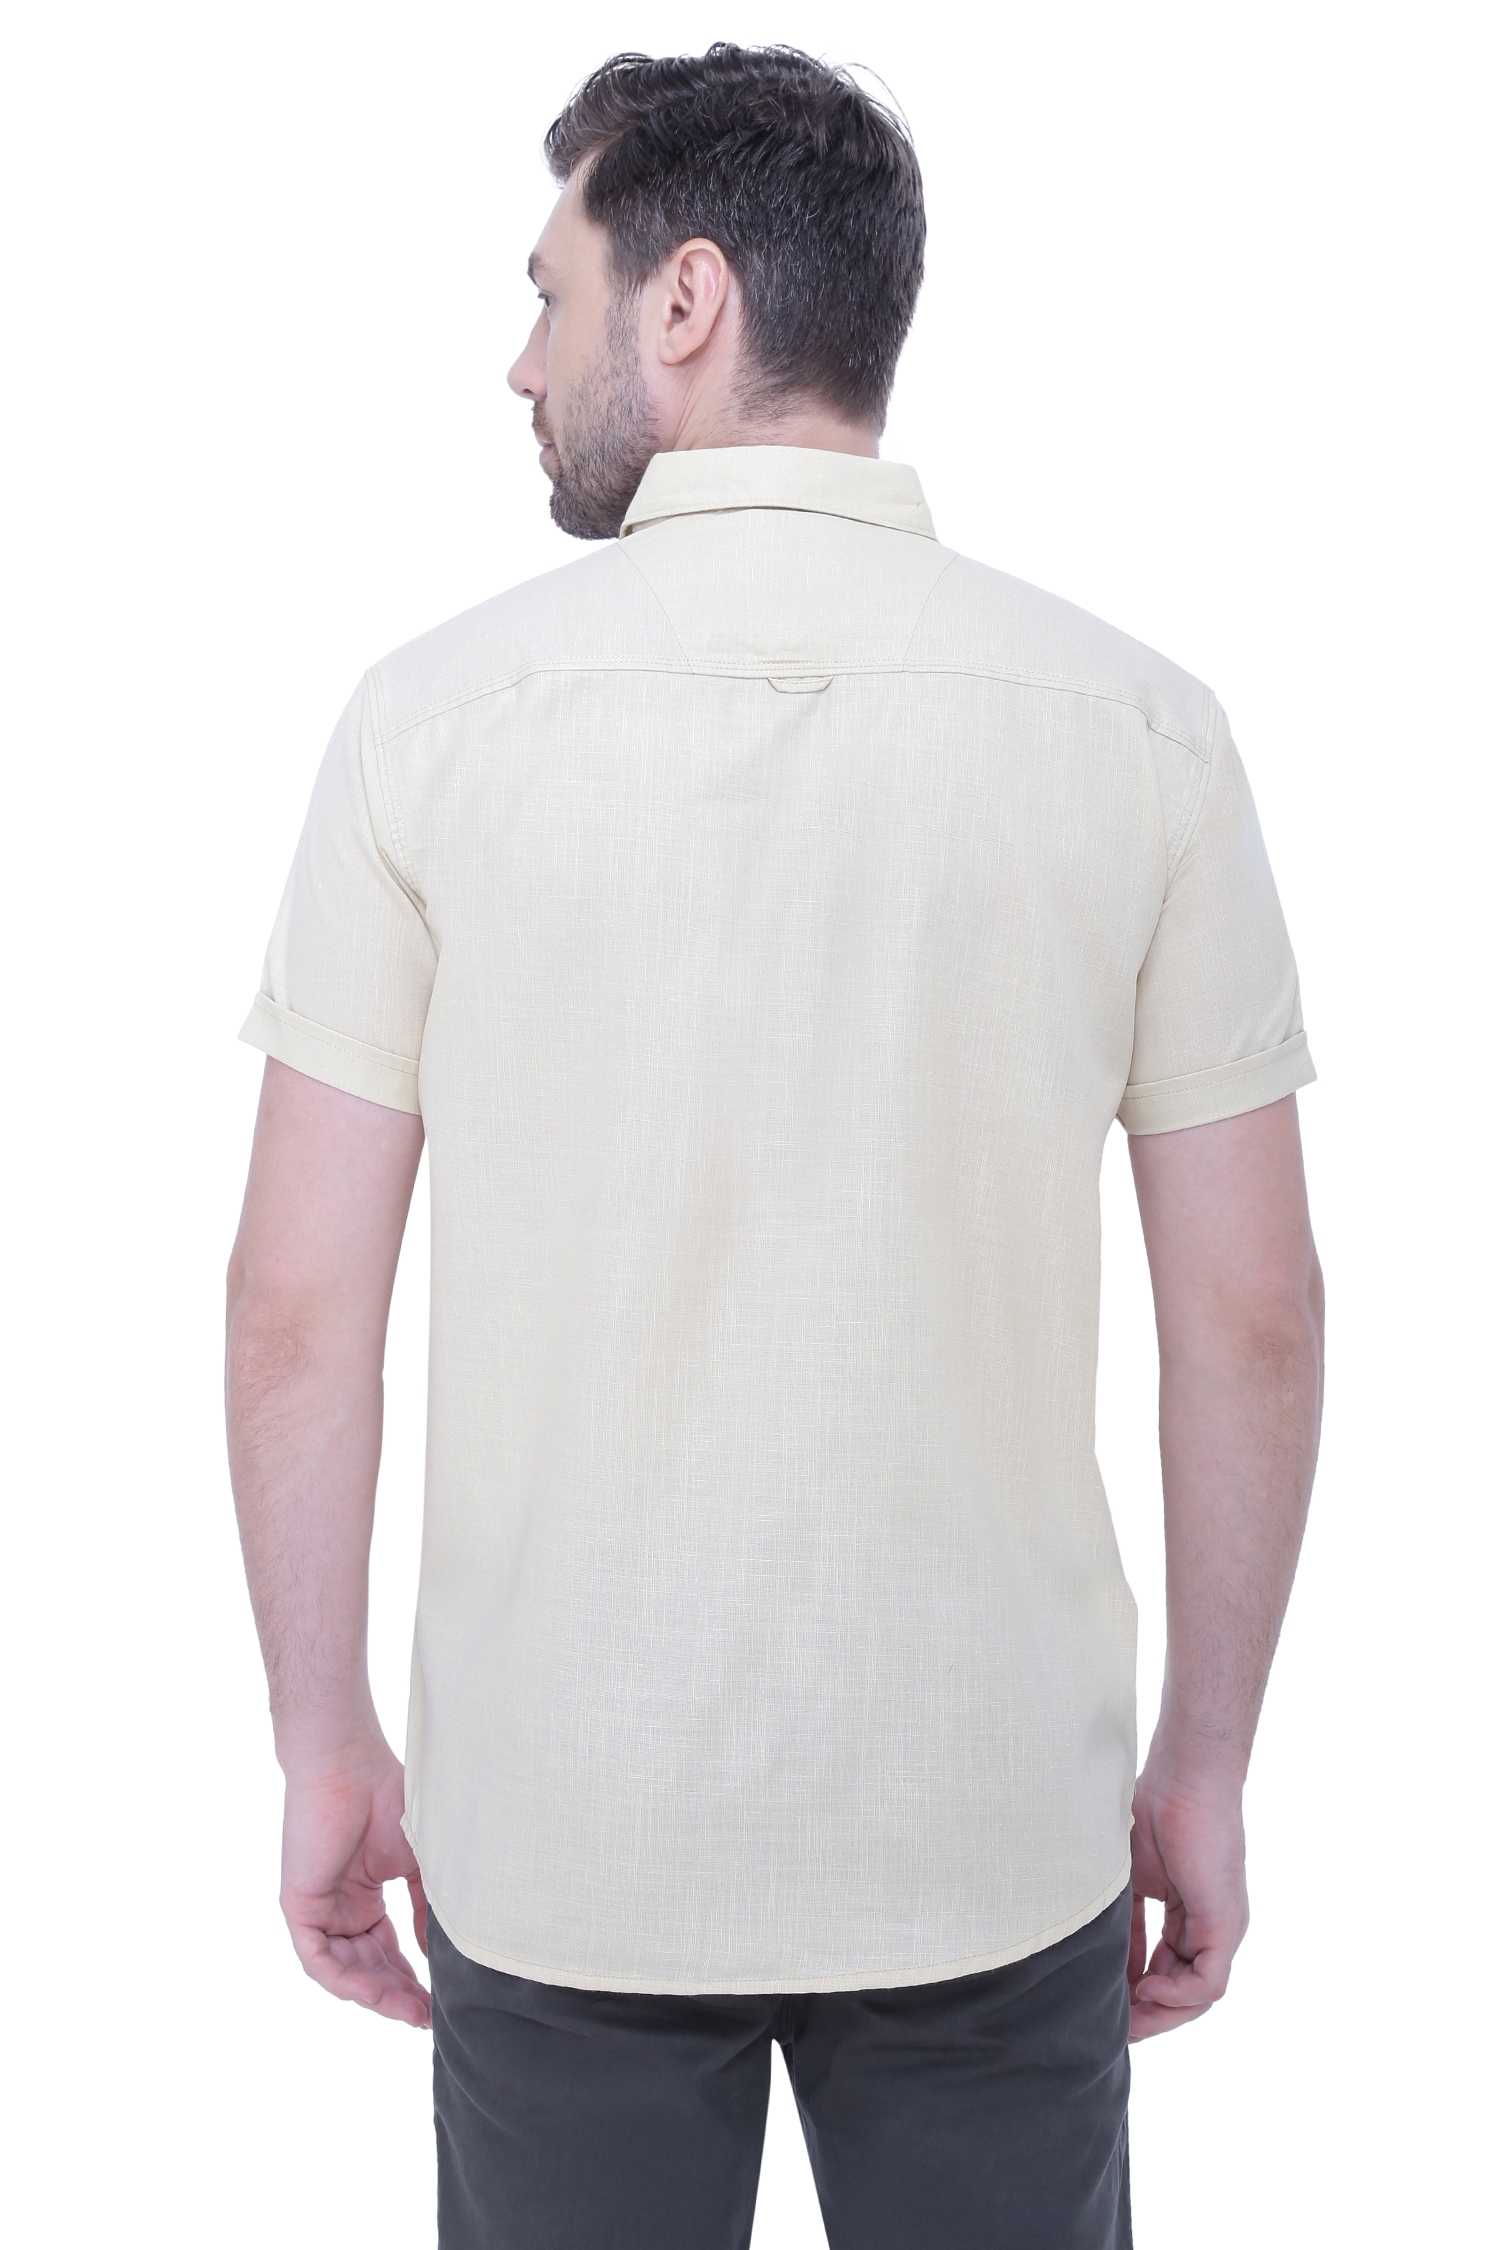 Kuons Avenue Men's Linen Blend Half Sleeves Casual Shirt-KACLHS1223